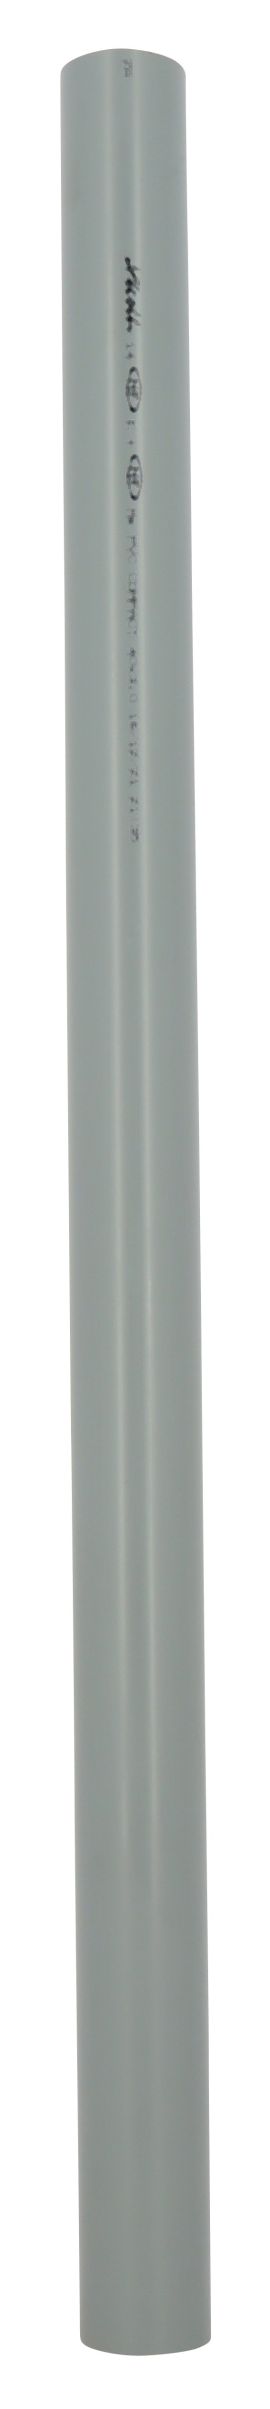 Tube d'évacuation PVC Ø 40, épaisseur 3 mm, 4 m, gris